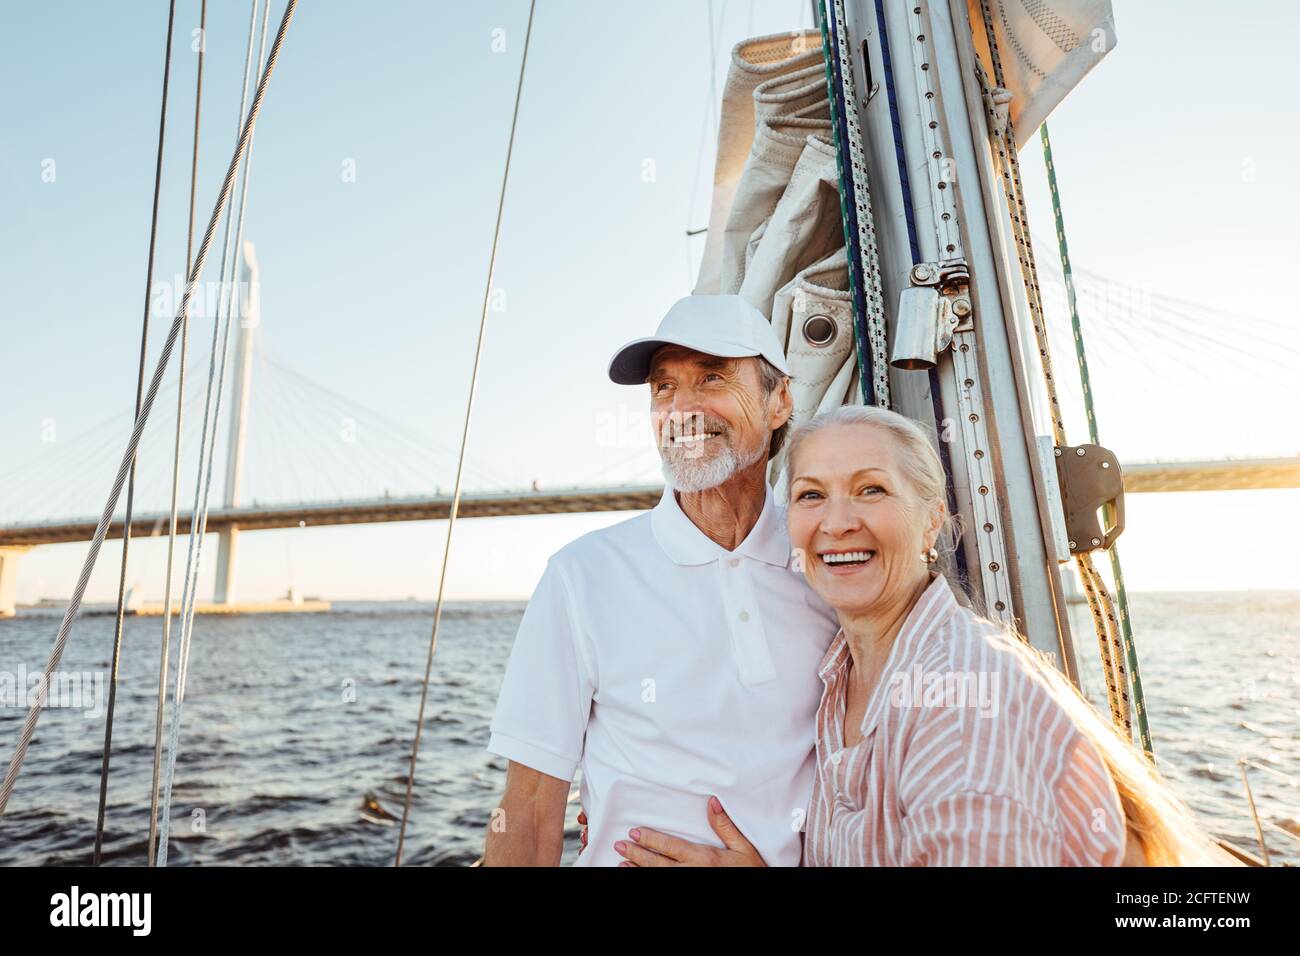 Glückliches Seniorenpaar, das am Mast steht. Zwei lächelnde Menschen genießen Bootsfahrt Stockfoto